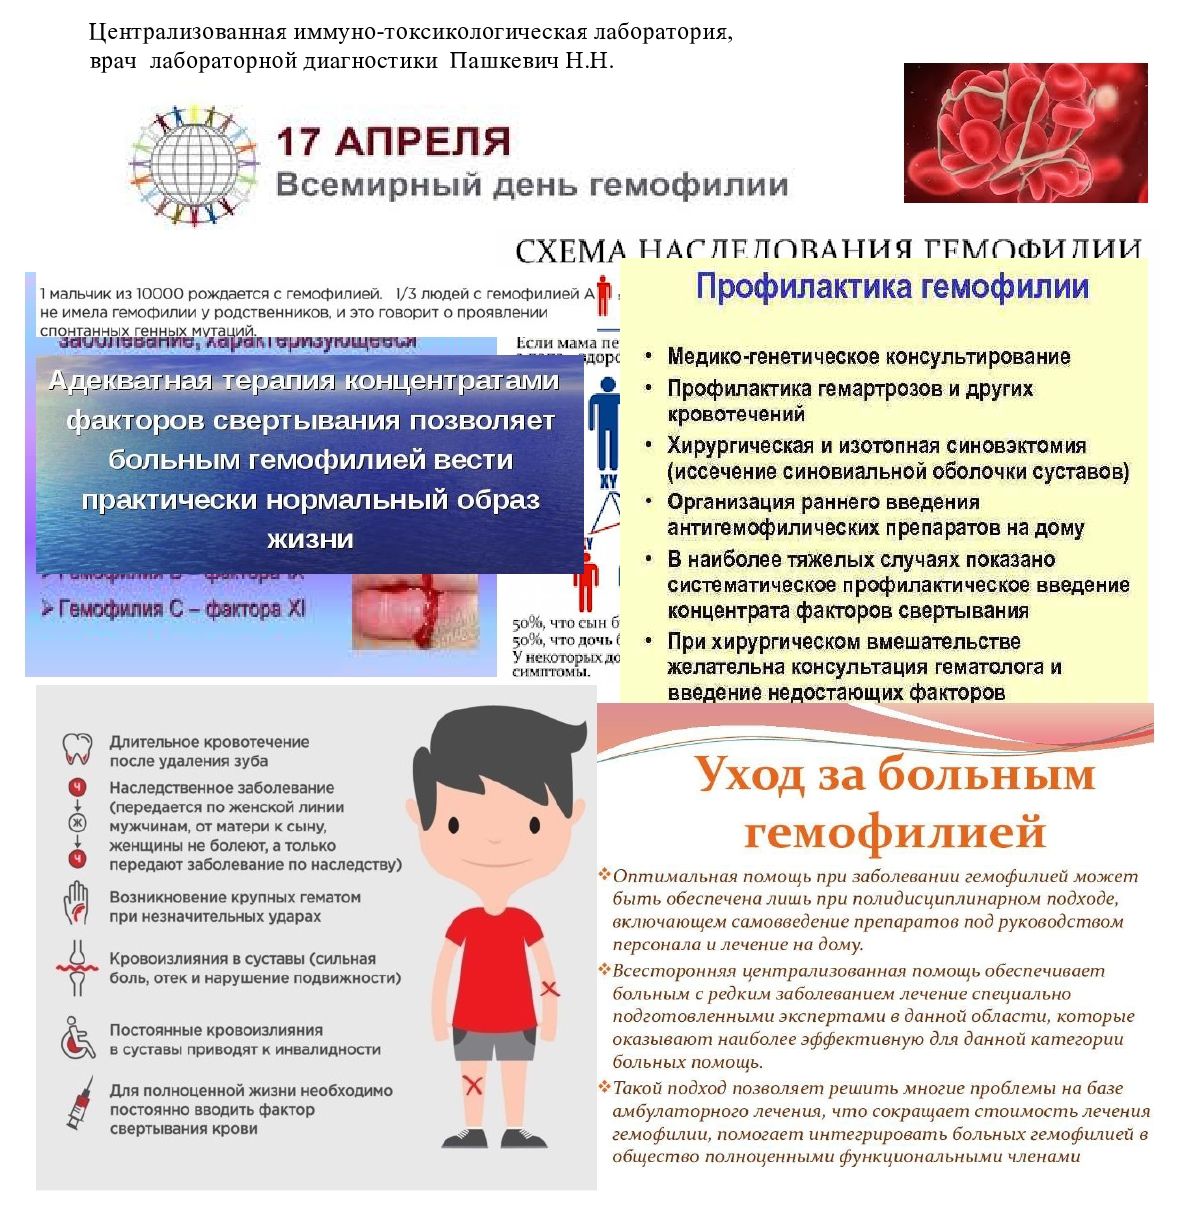 17 апреля всемирный день. Всемирный день гемофилии. Гемофилия памятка. Всемирный день борьбы с гемофилией. Профилактика гемофилии памятка.